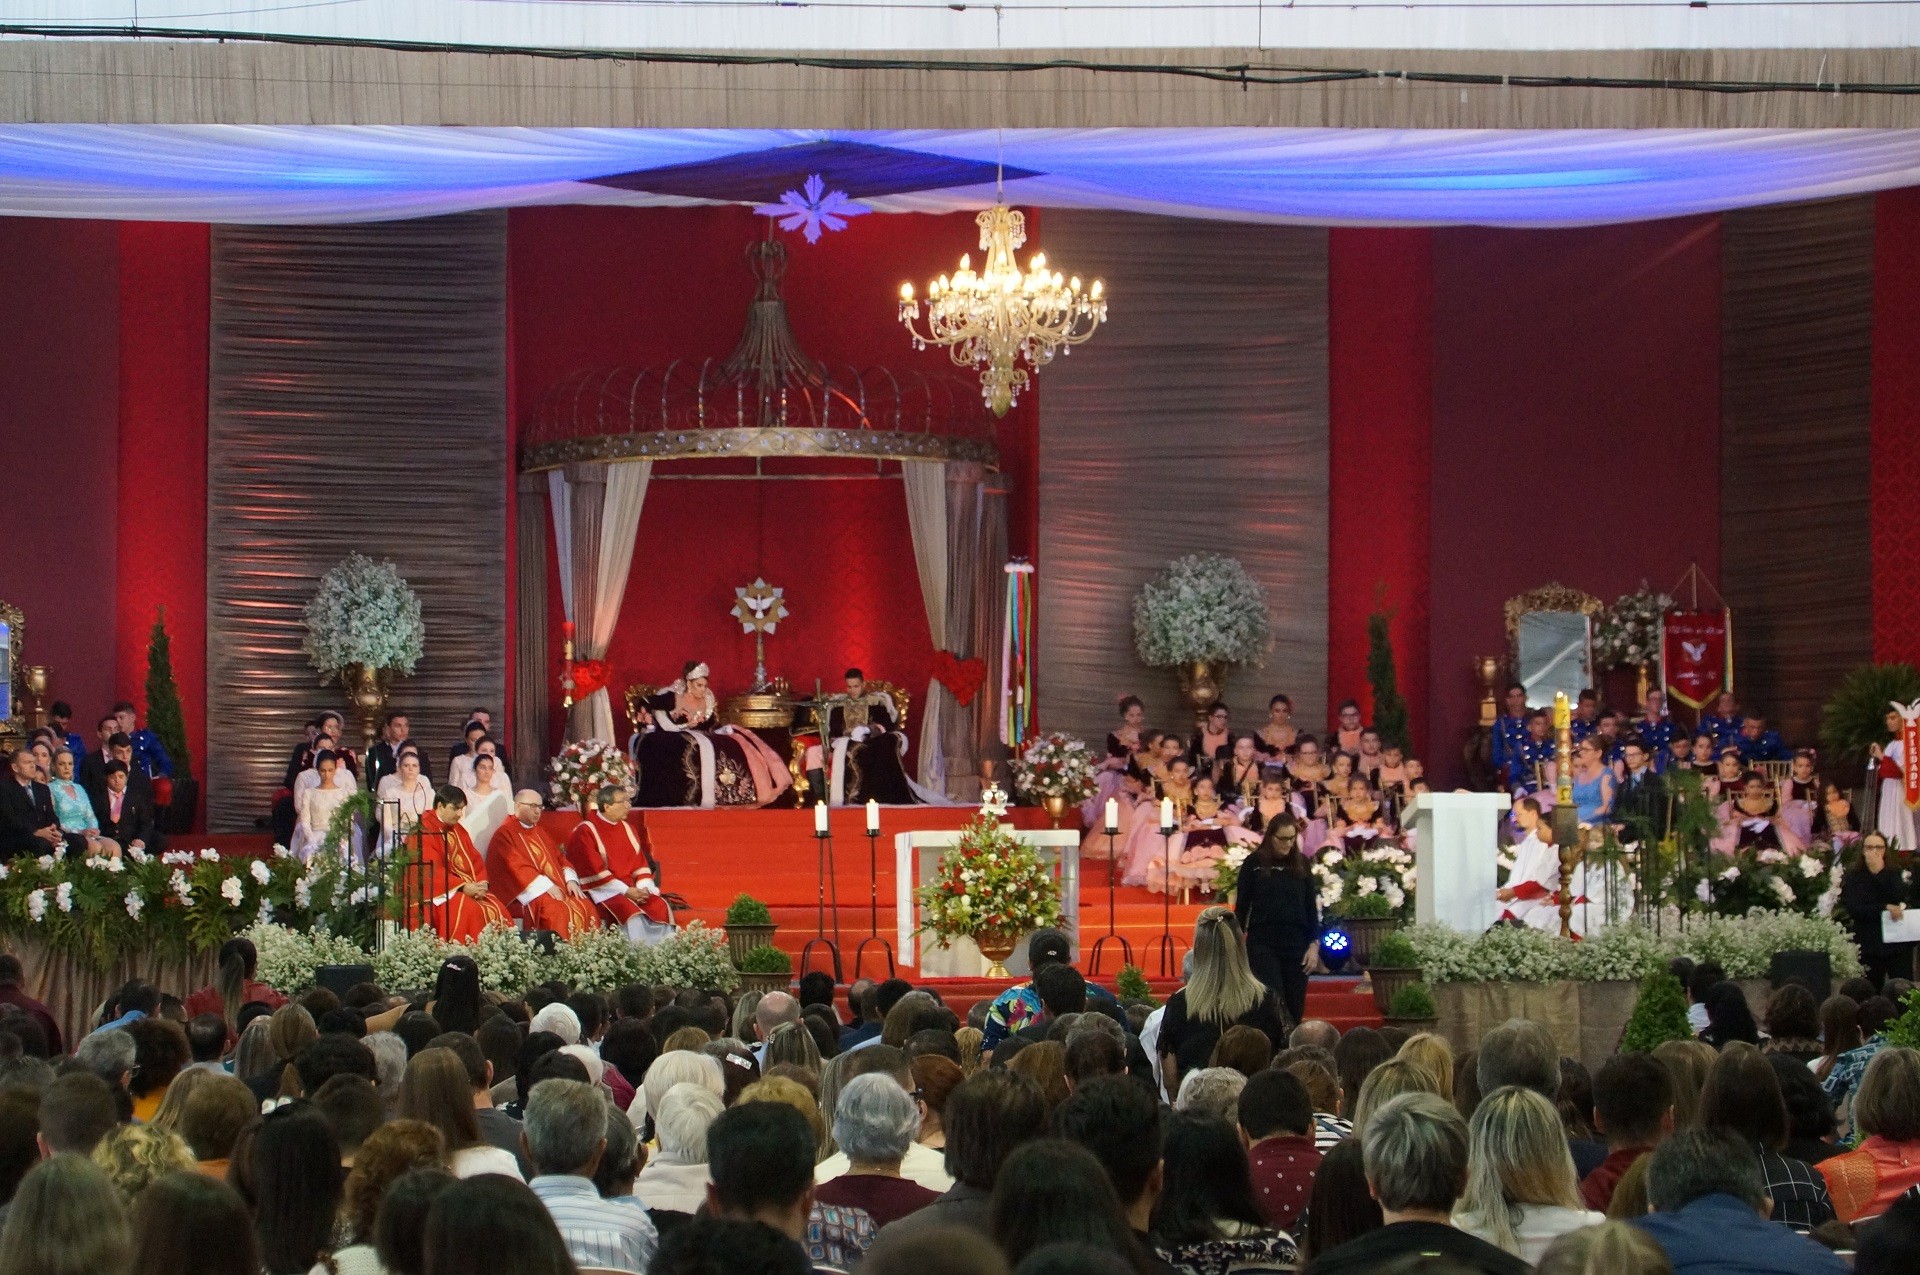 Festa do Divino reforça princípios de fé em Camboriú